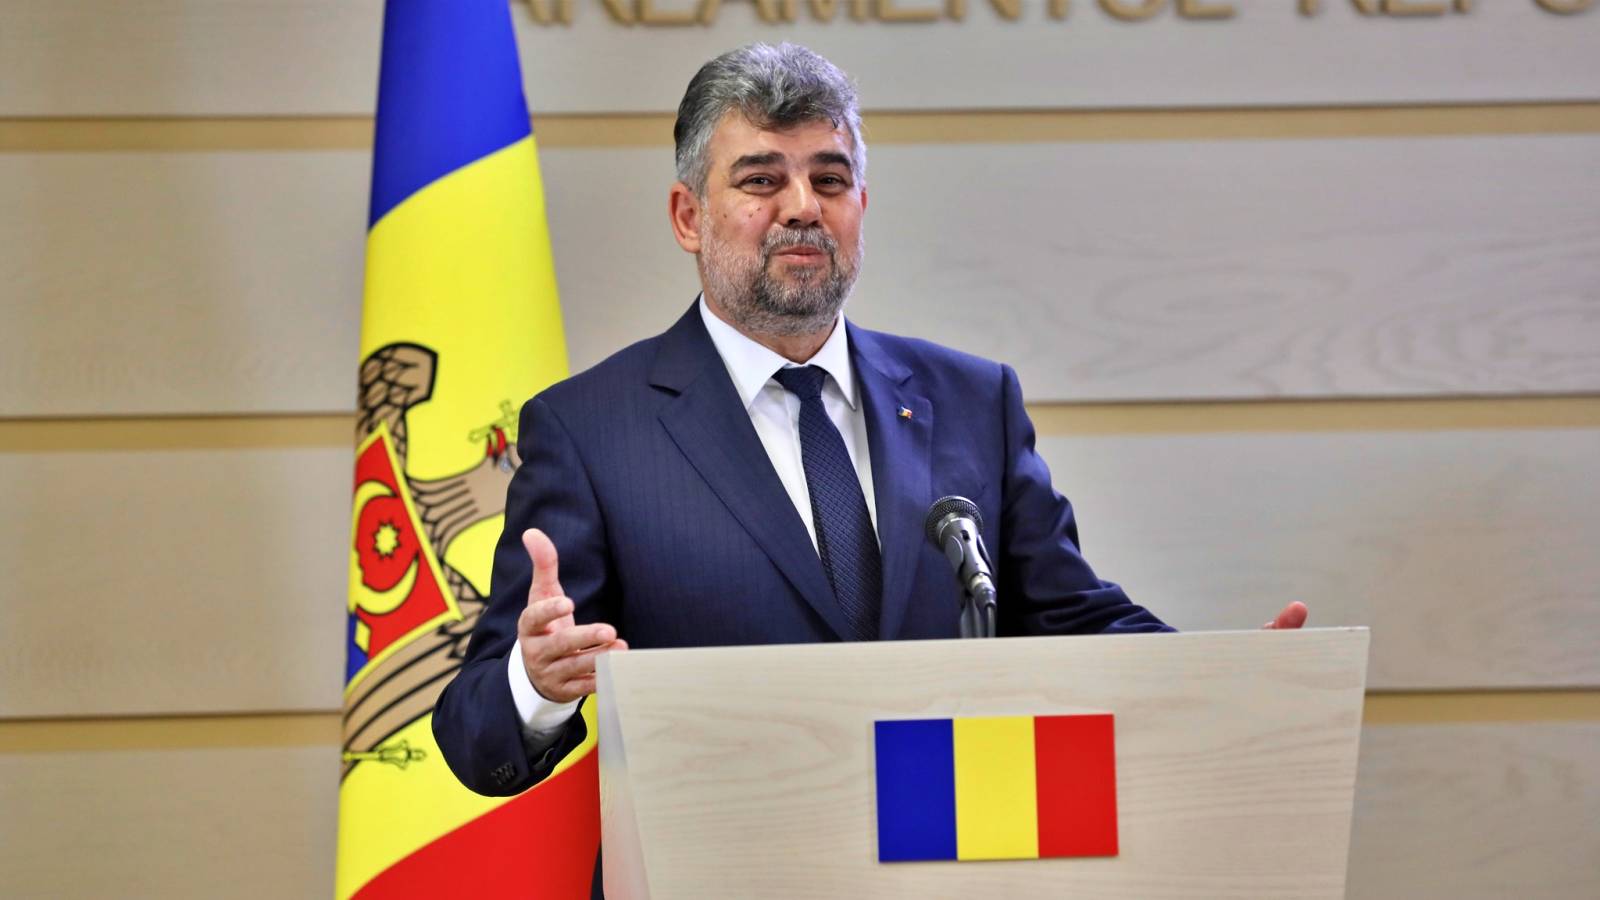 Marcel Ciolacu 2 IMPORTANTE Anunturi Oficiale ULTIMA ORA Presedintelui PSD Romania